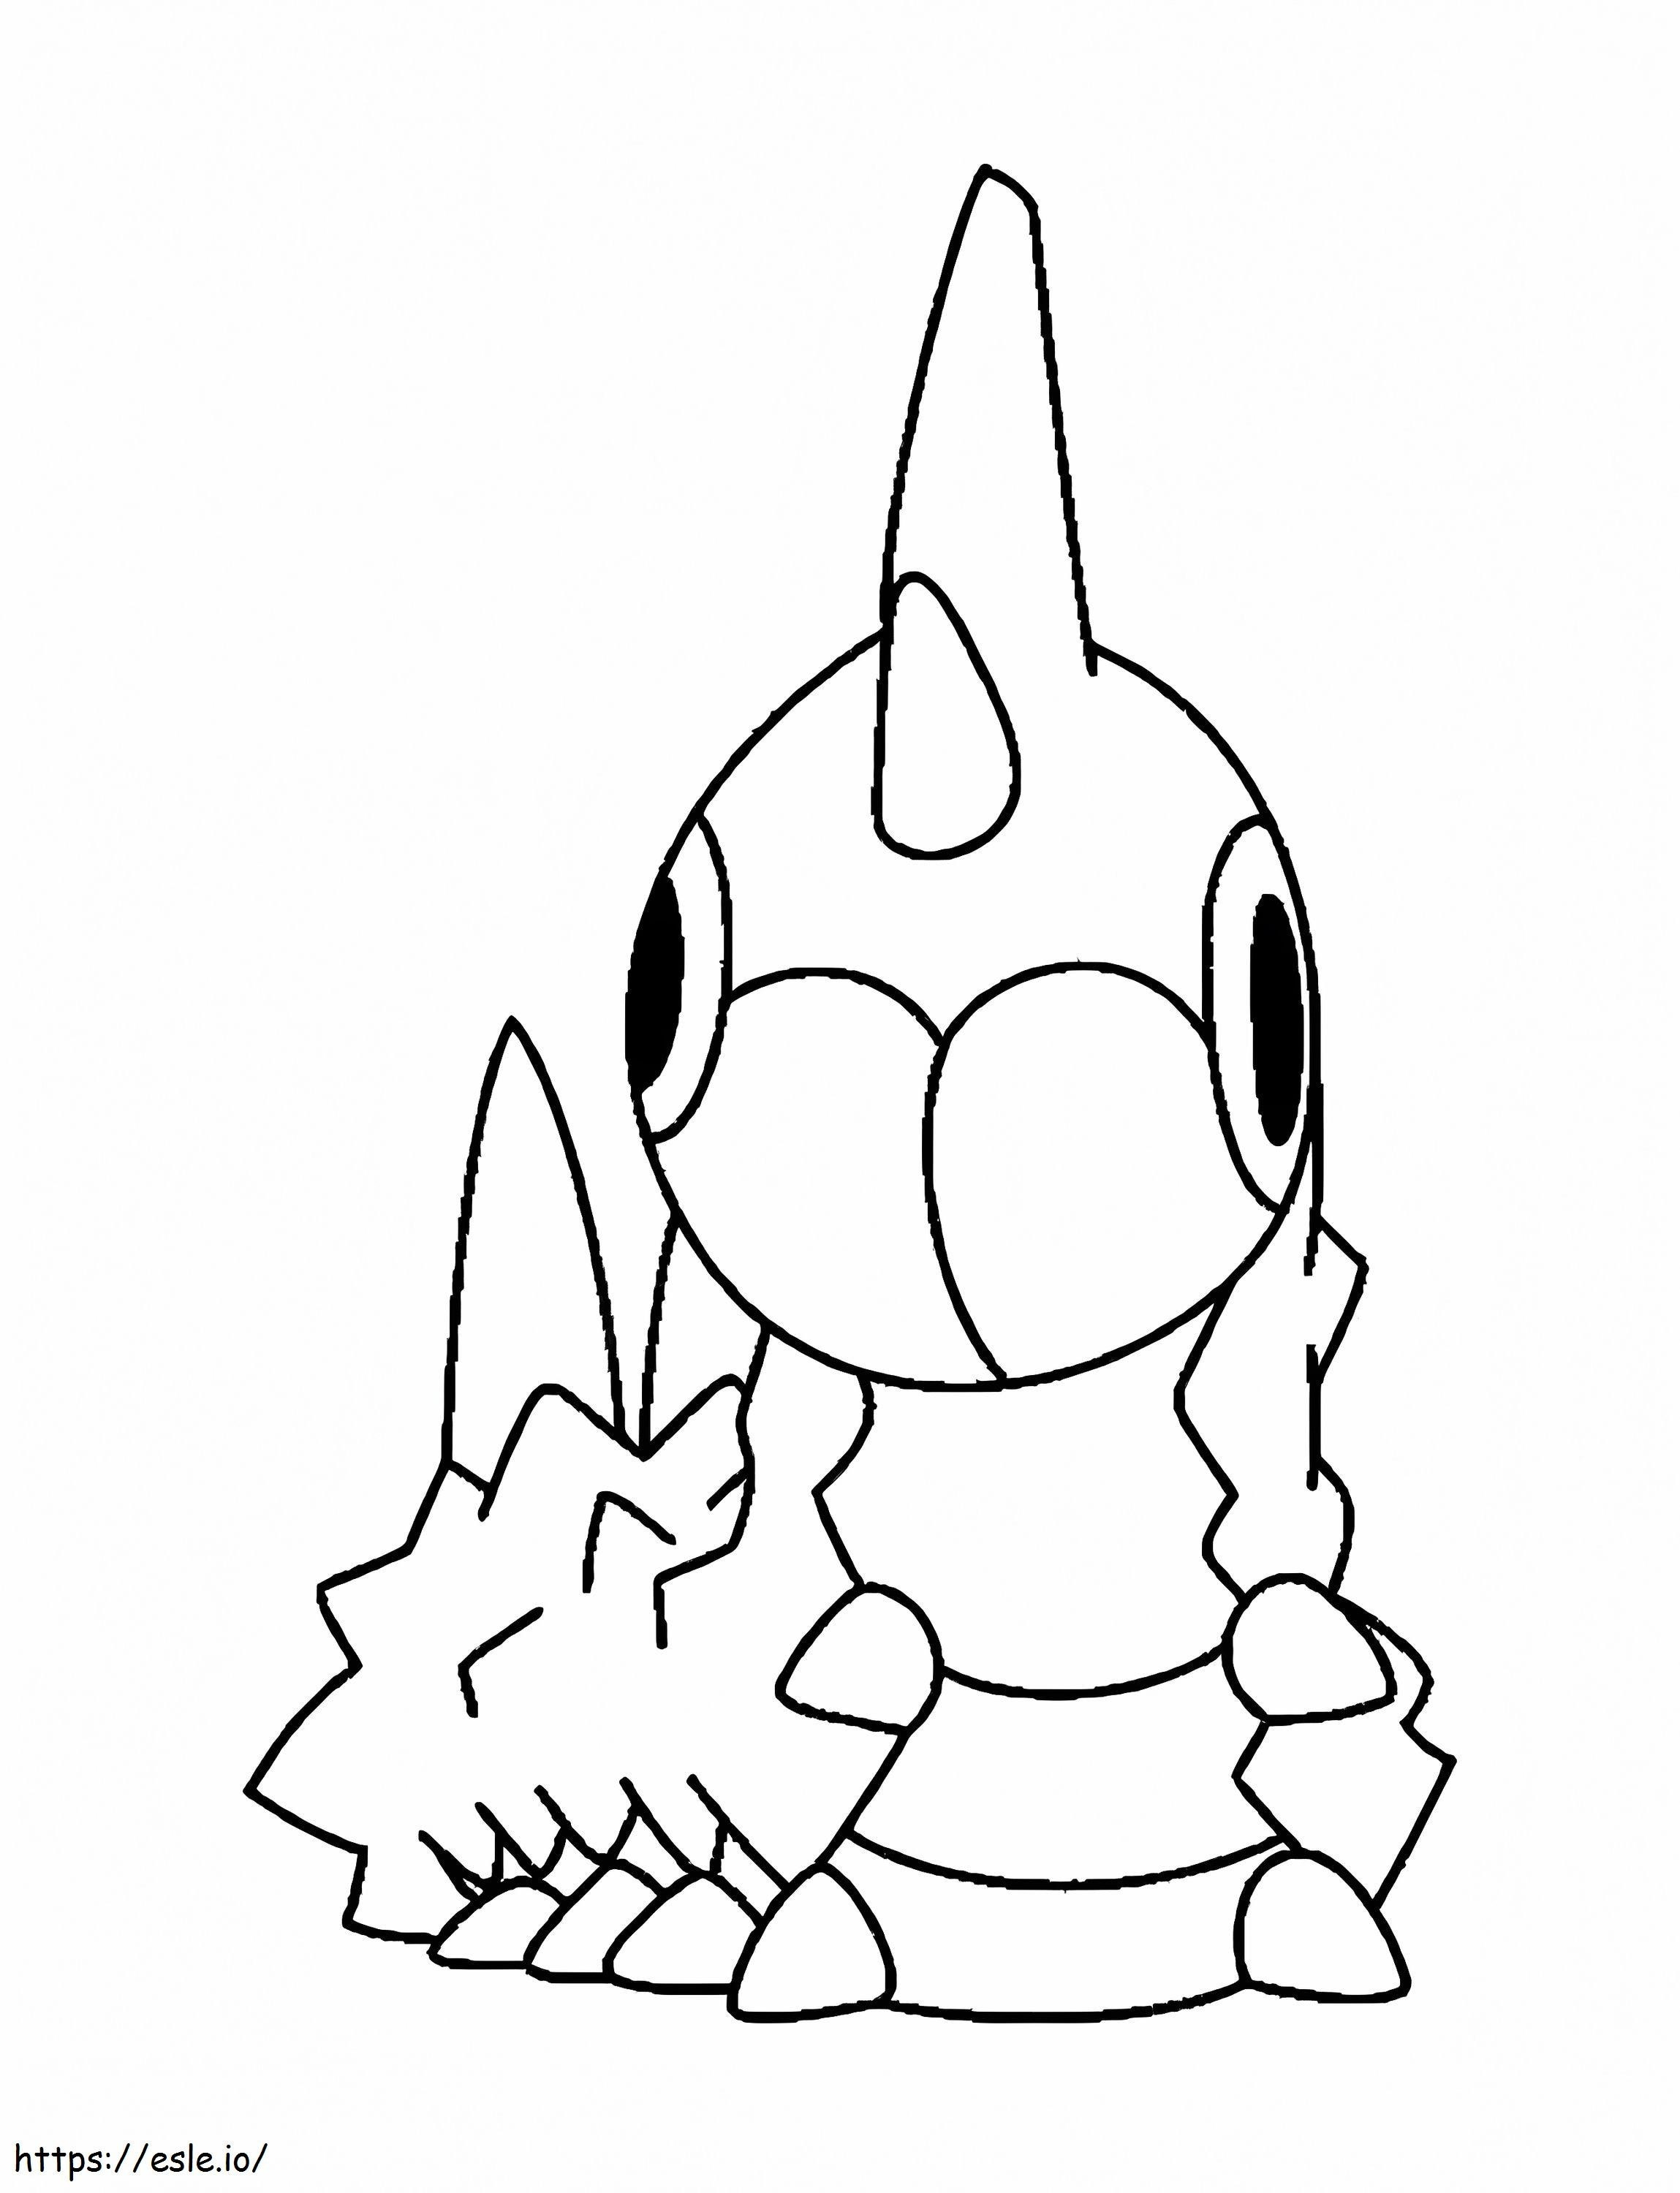 Wurmple Gen 3 Pokemon coloring page